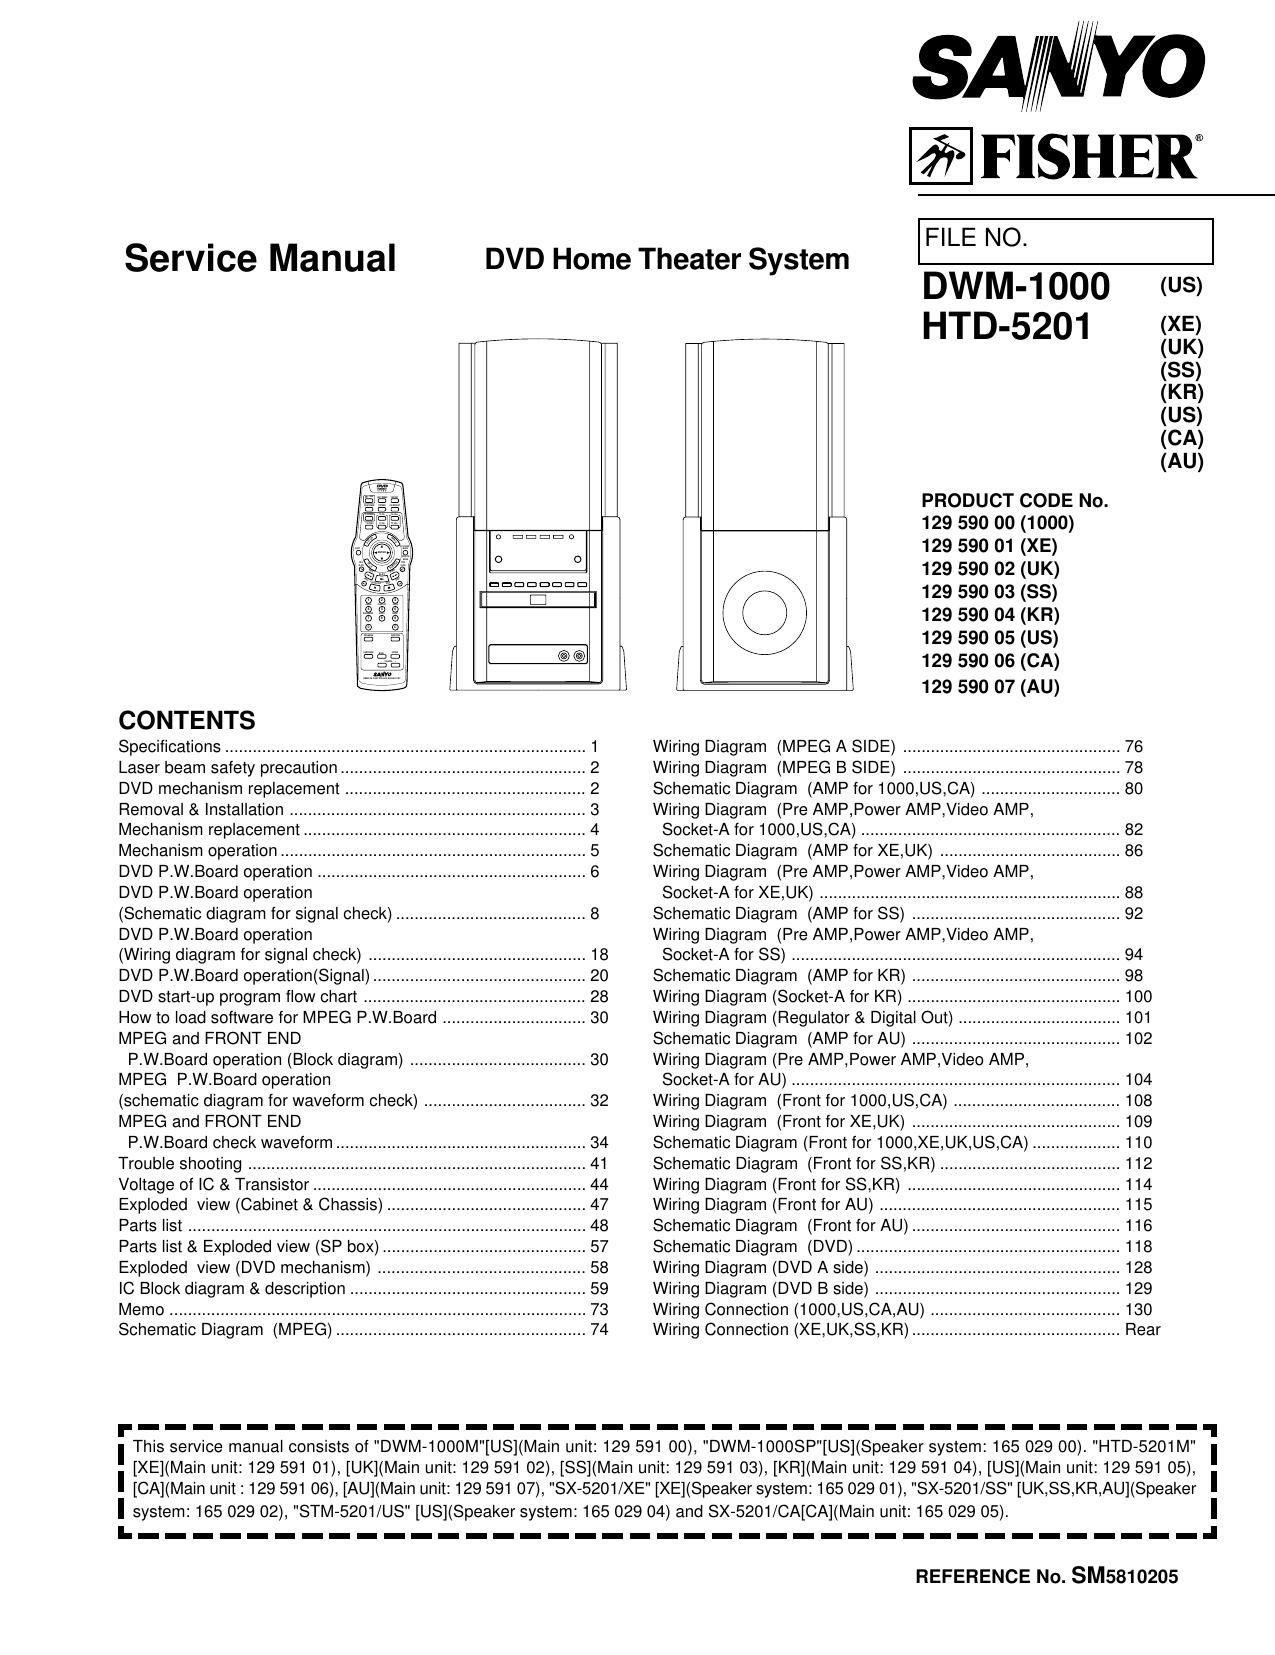 Fisher DWM 1000 Service Manual